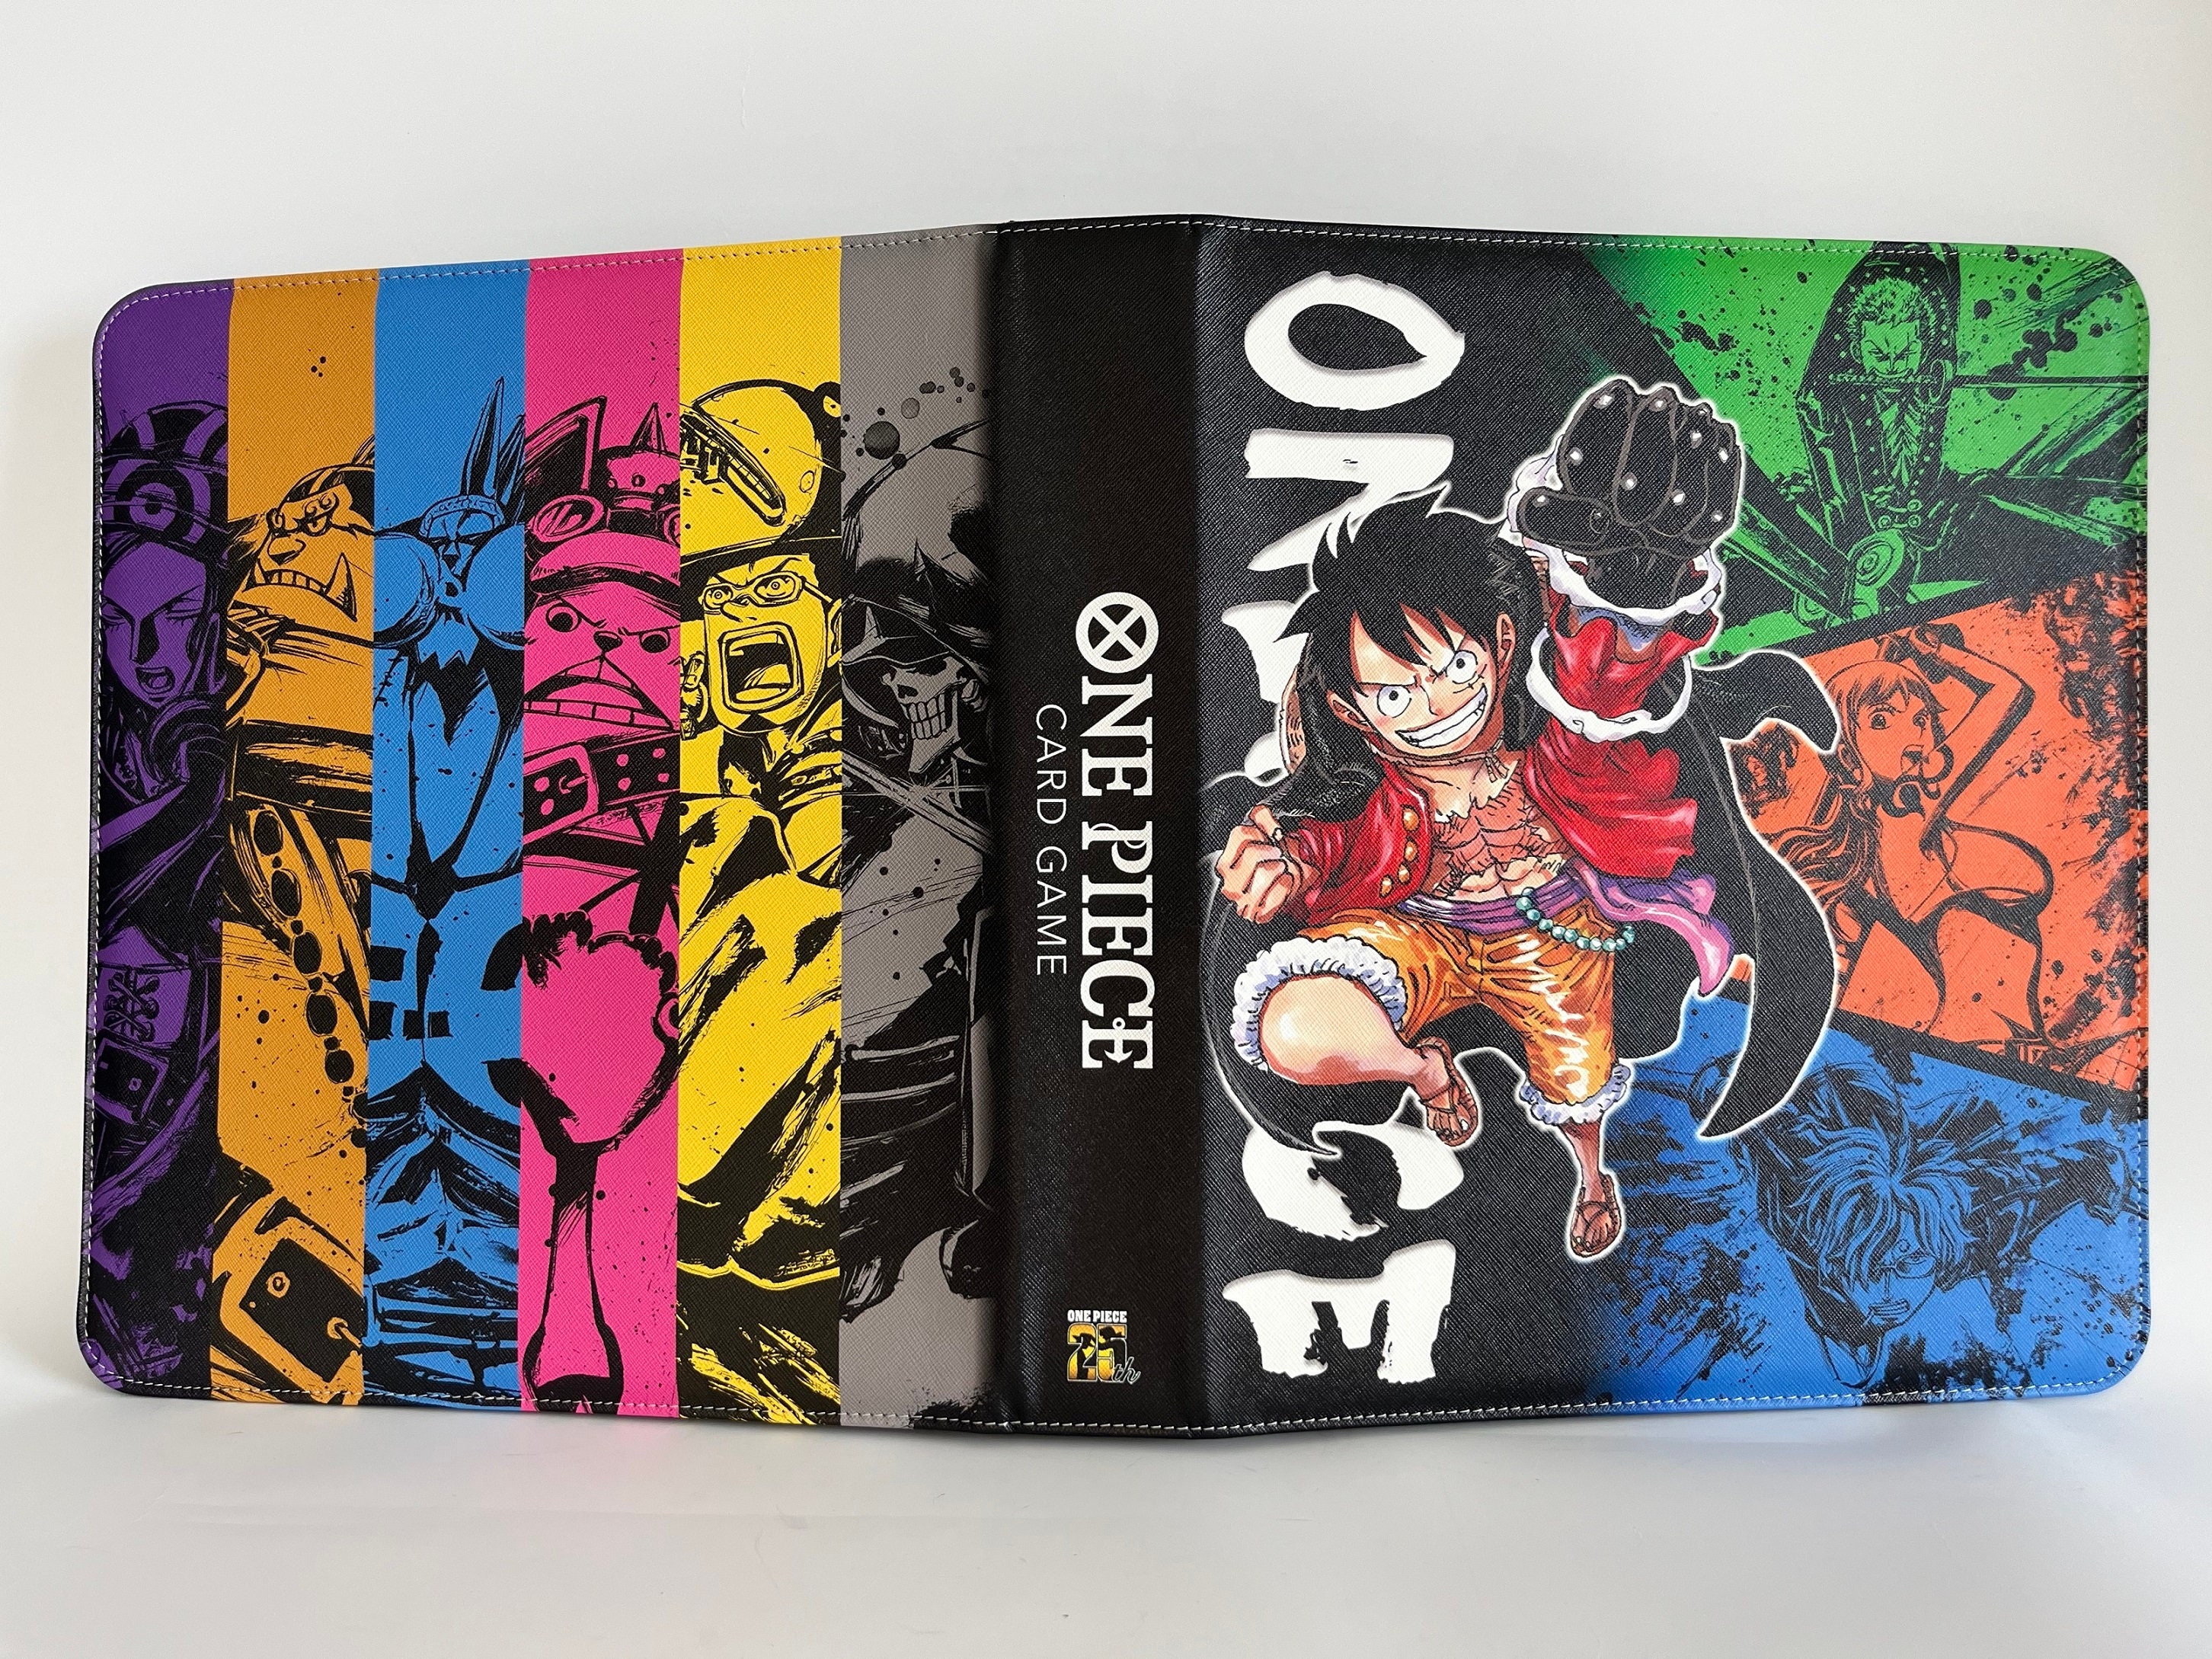 One Piece TCG Card Game - 9-Pocket Binder Set Anime Version *EN*